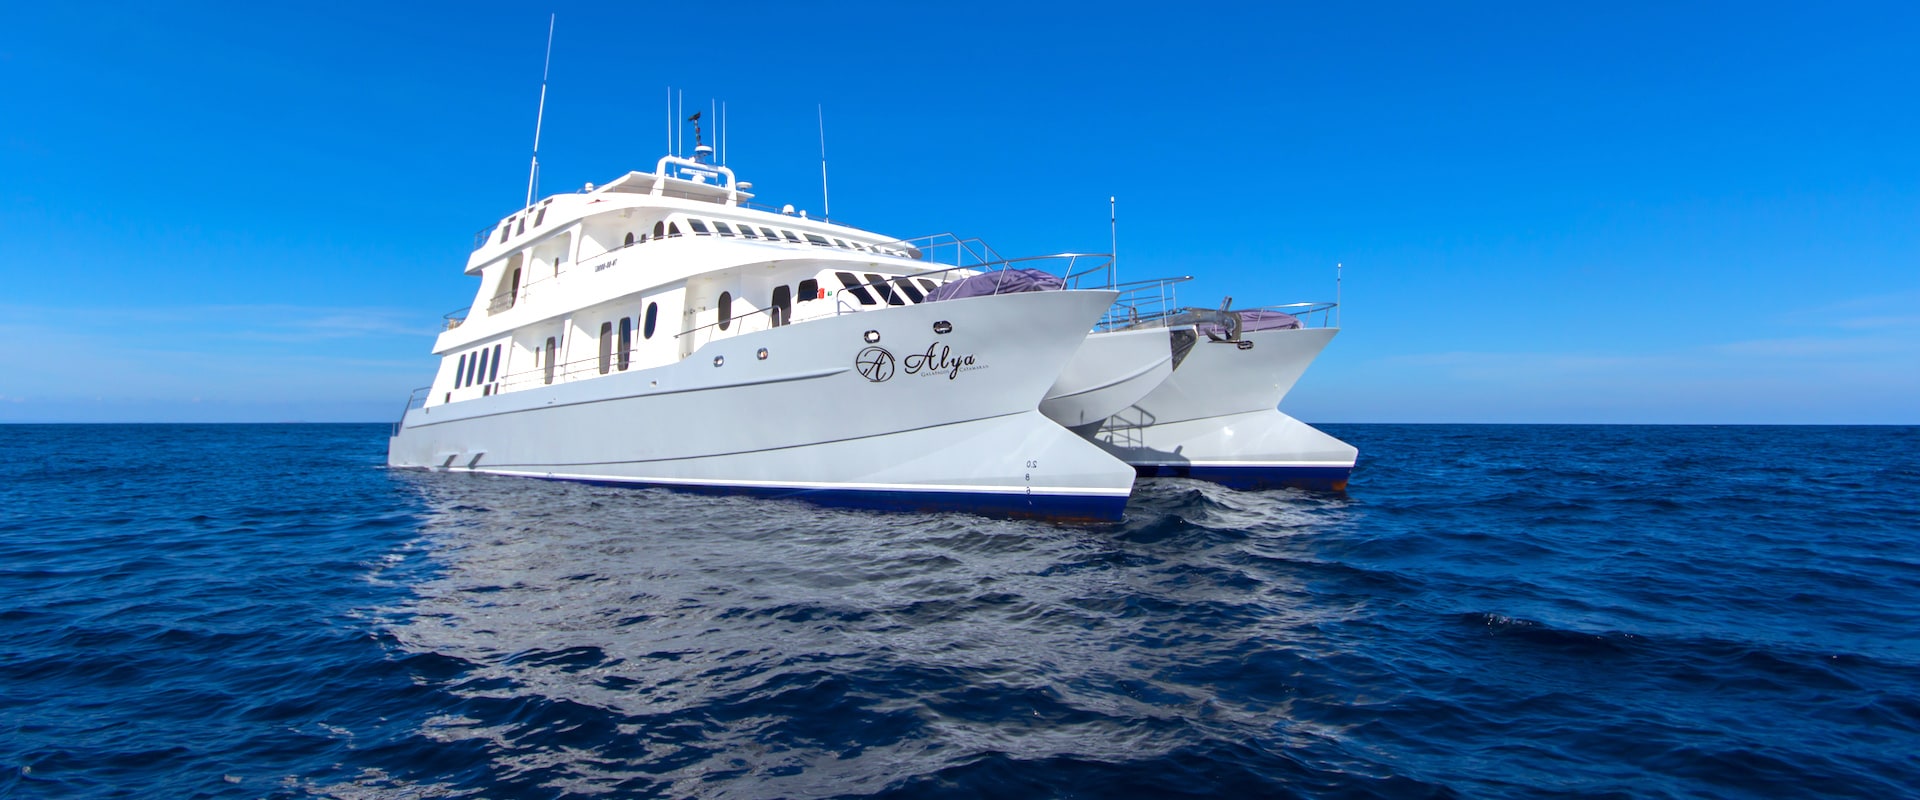 Frota Royal Galapagos Cruises